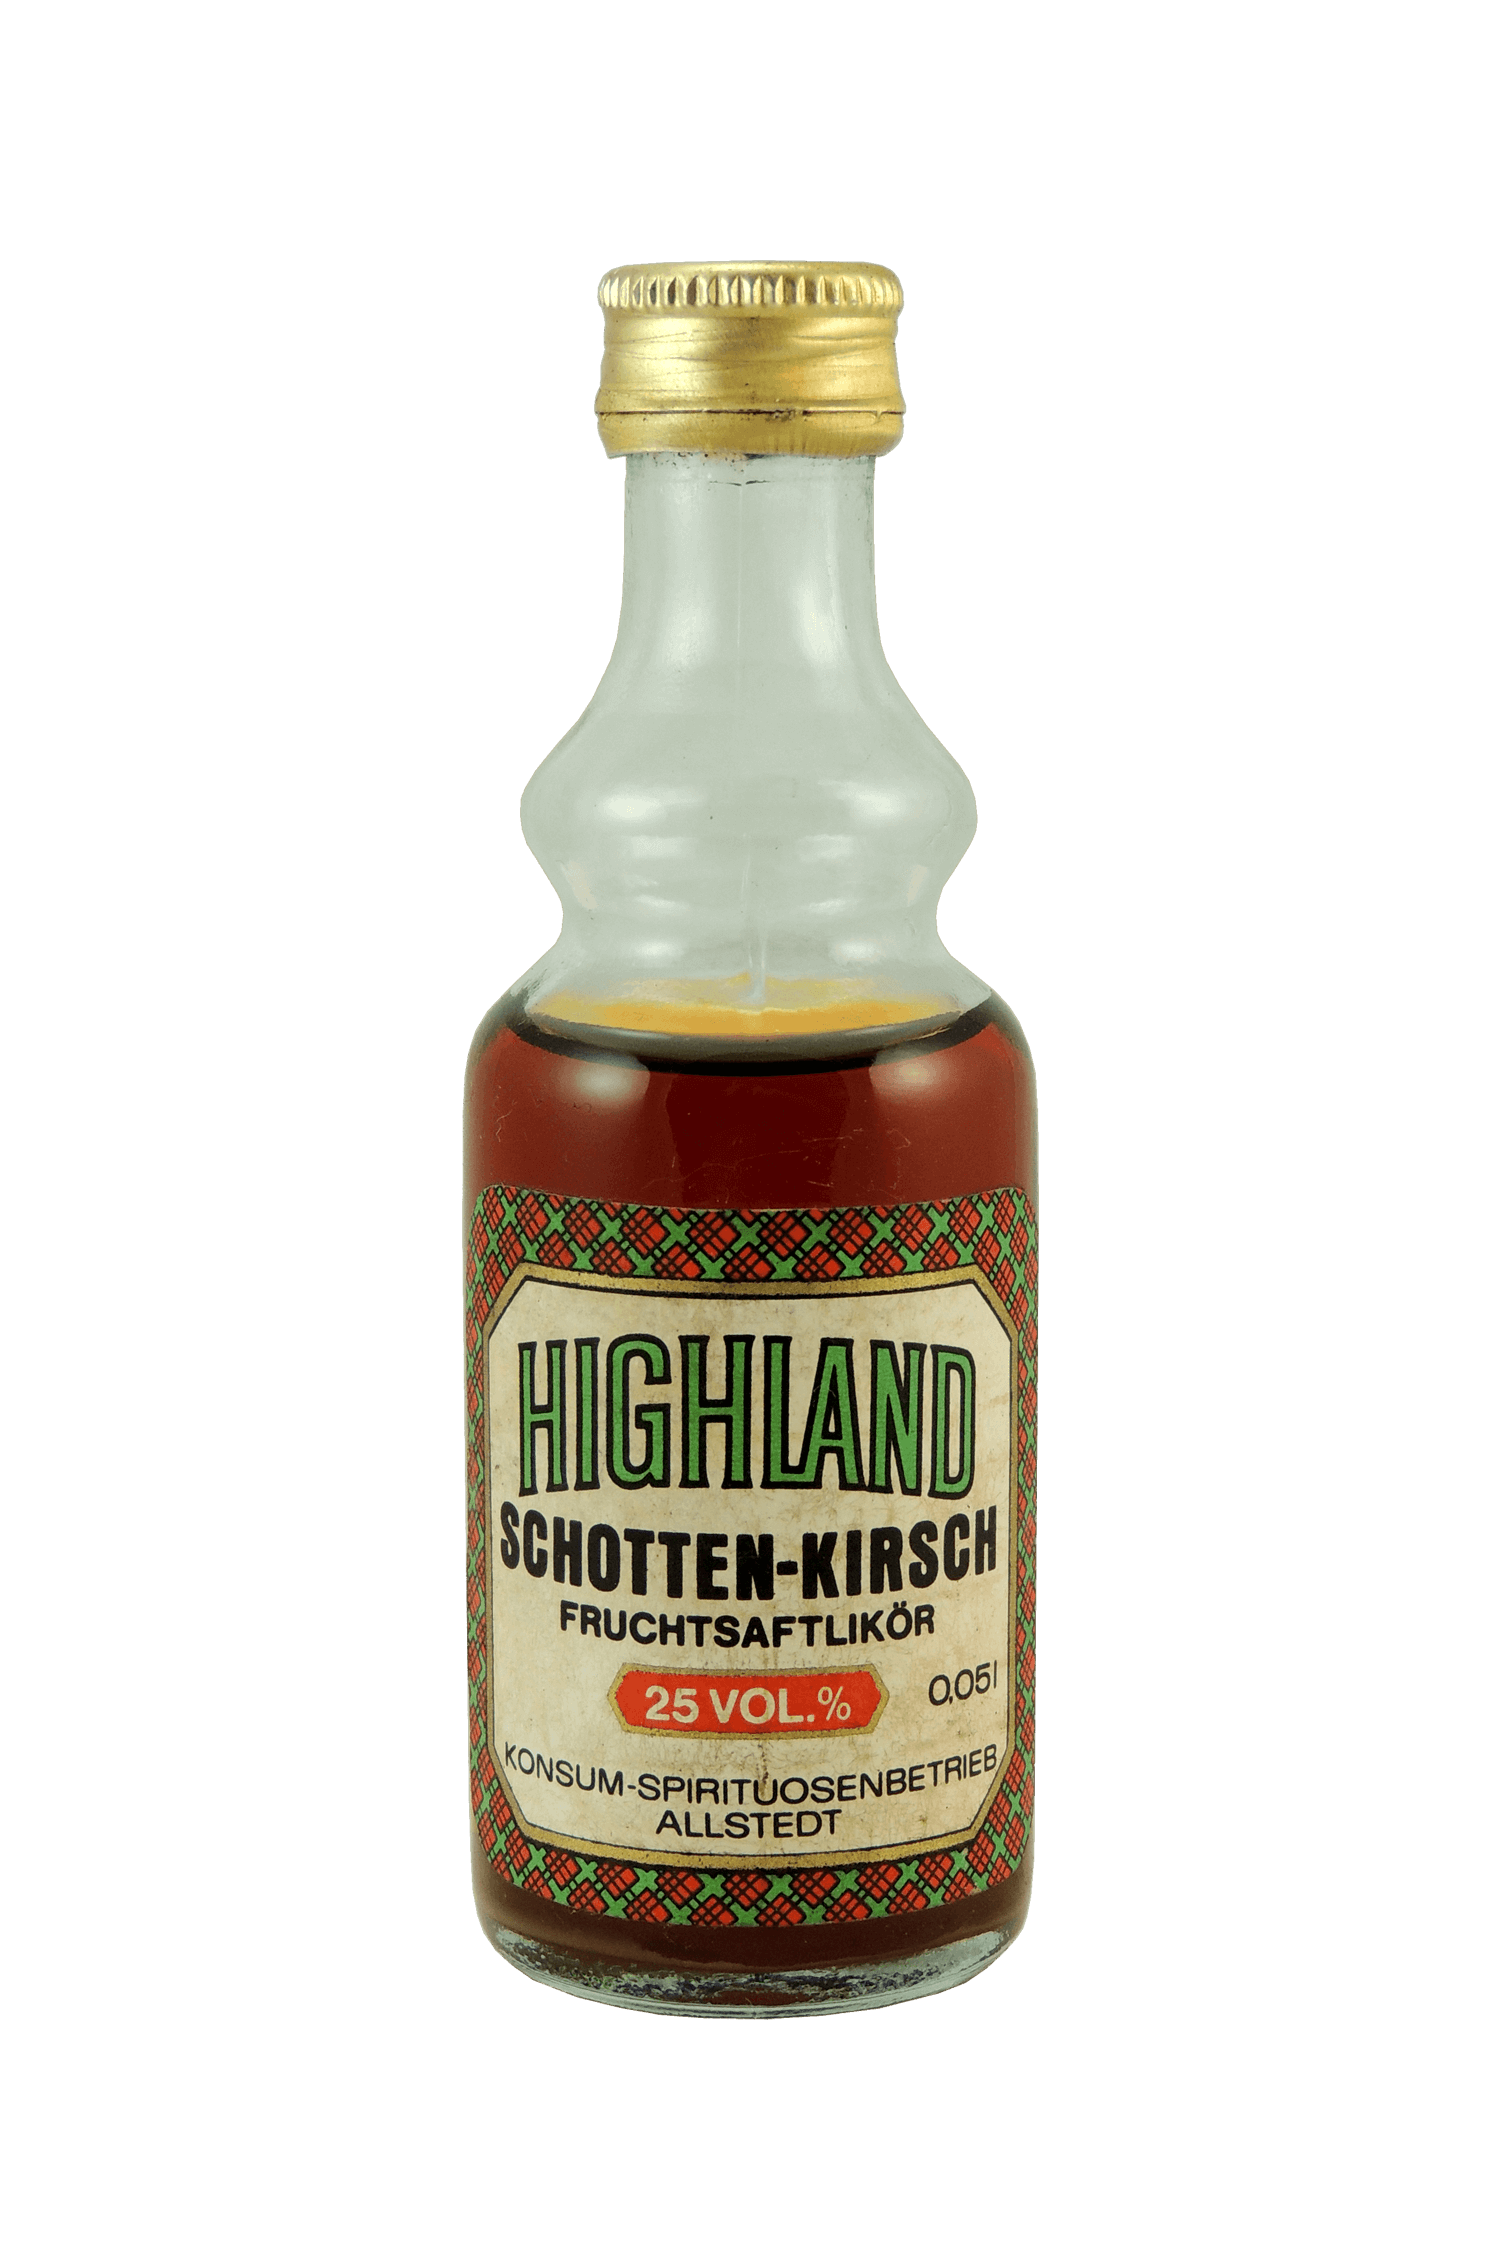 Highland Schotten – Kirsch